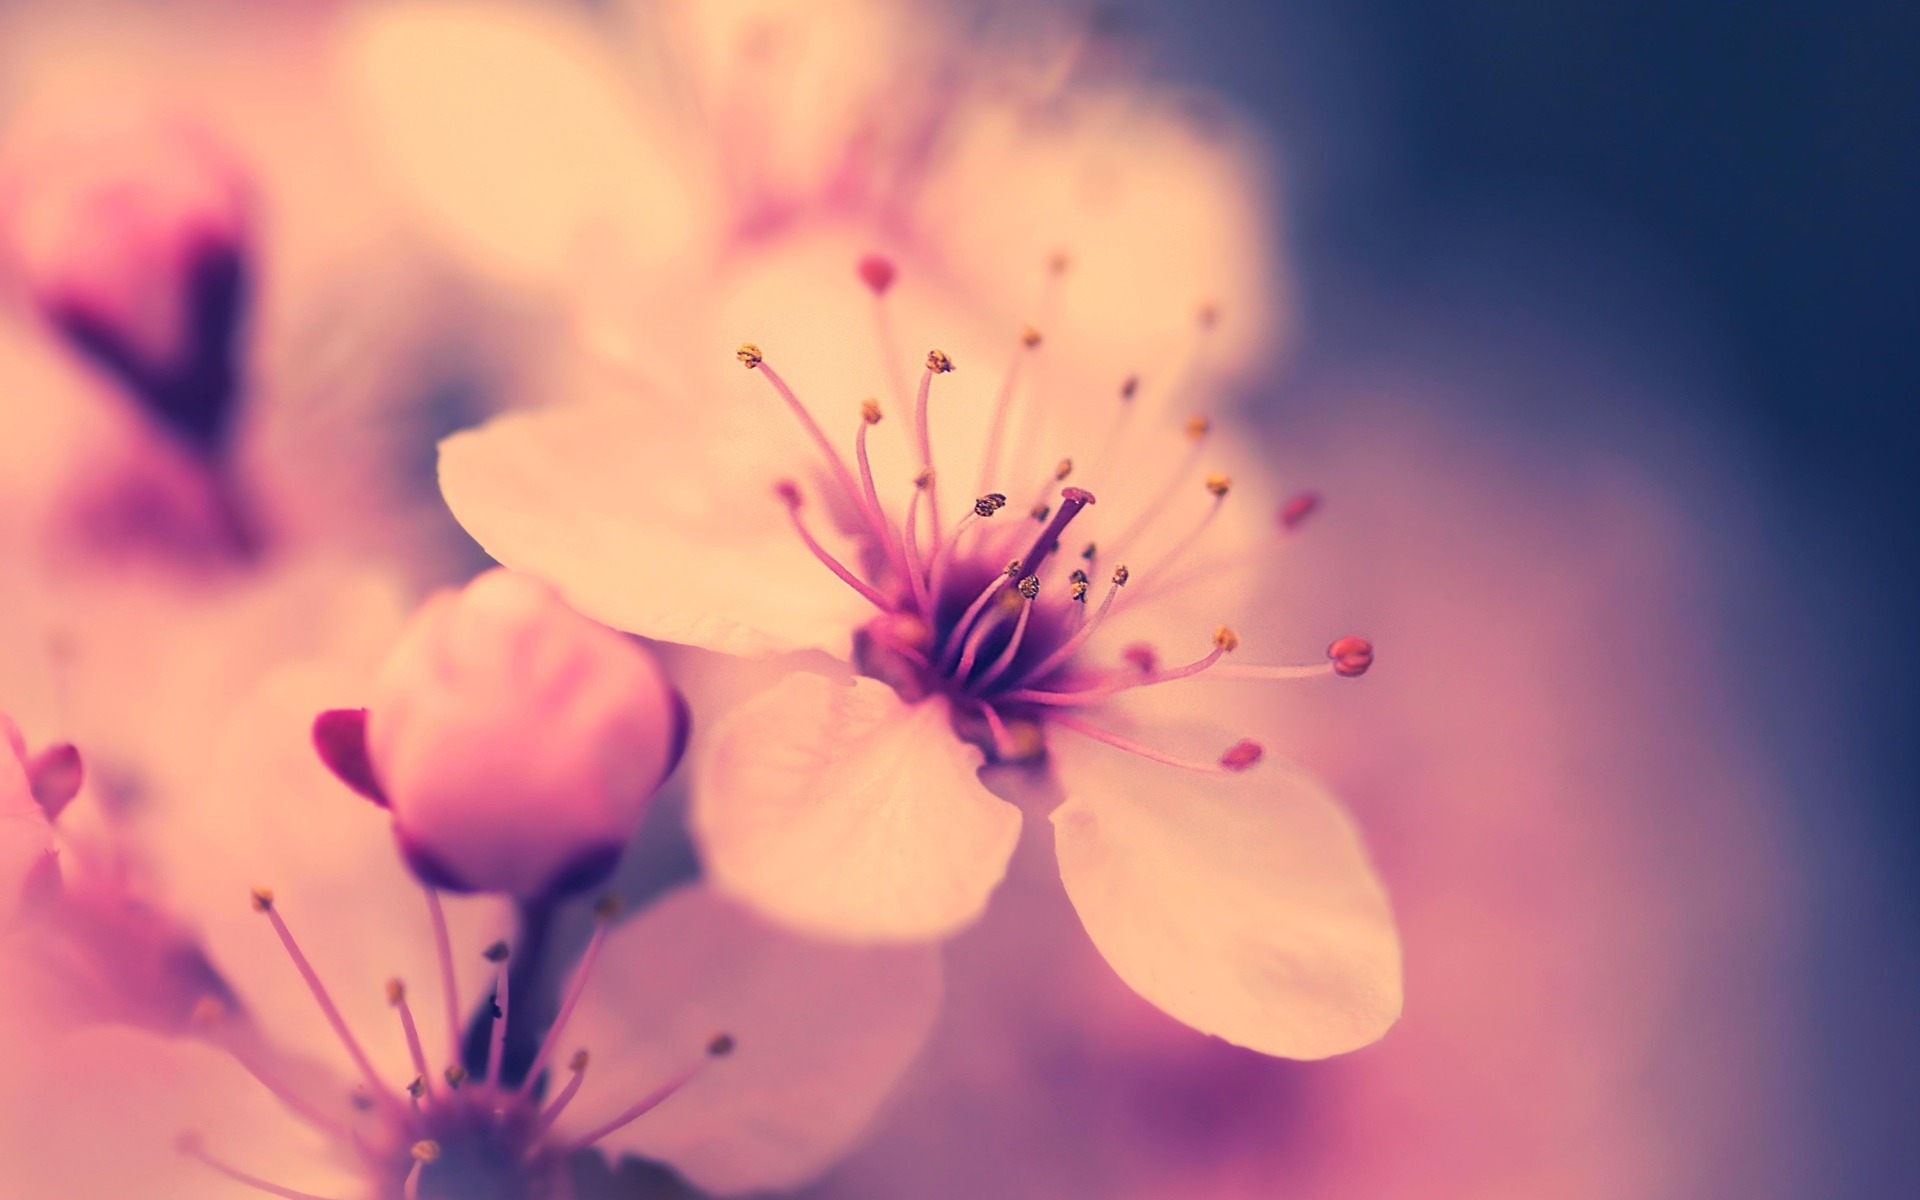 wallpaper > Beautiful flowers > blossom desktop wallpaper @ Collect HD